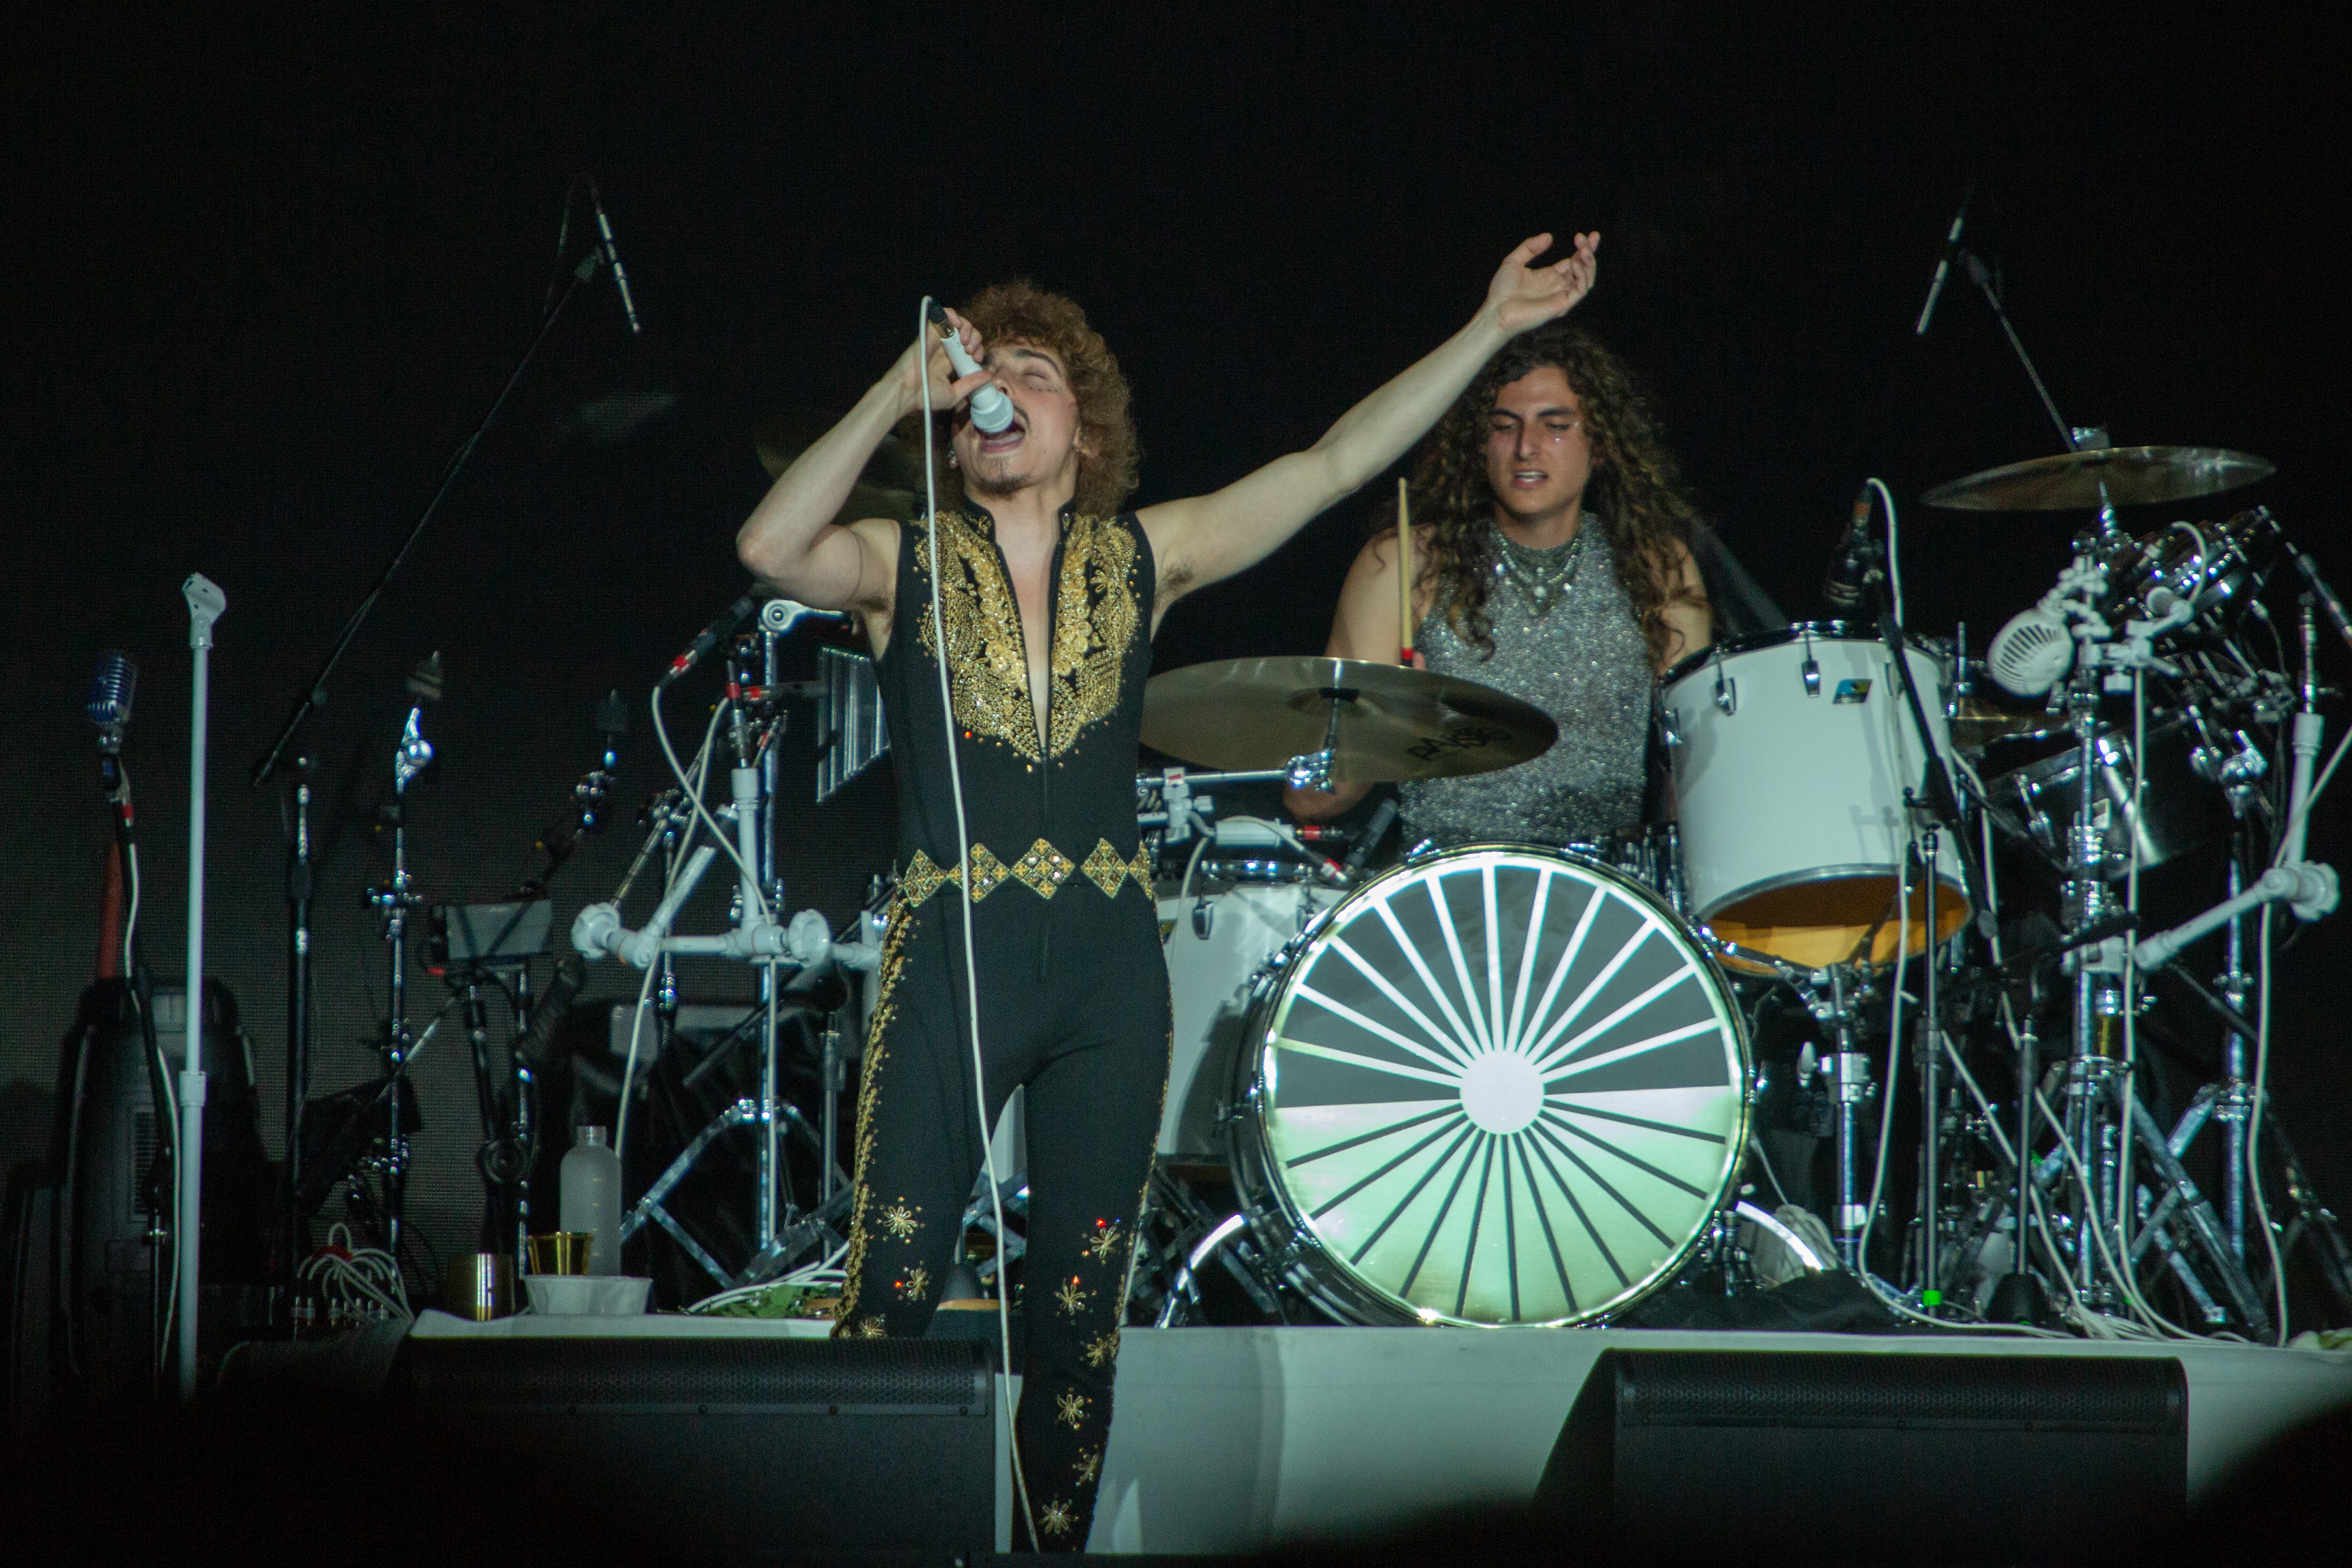 A banda Greta Van Fleet fez o show de abertura para o Metallica, no estádio do Morumbi, em São Paulo - 10/05/2022 -